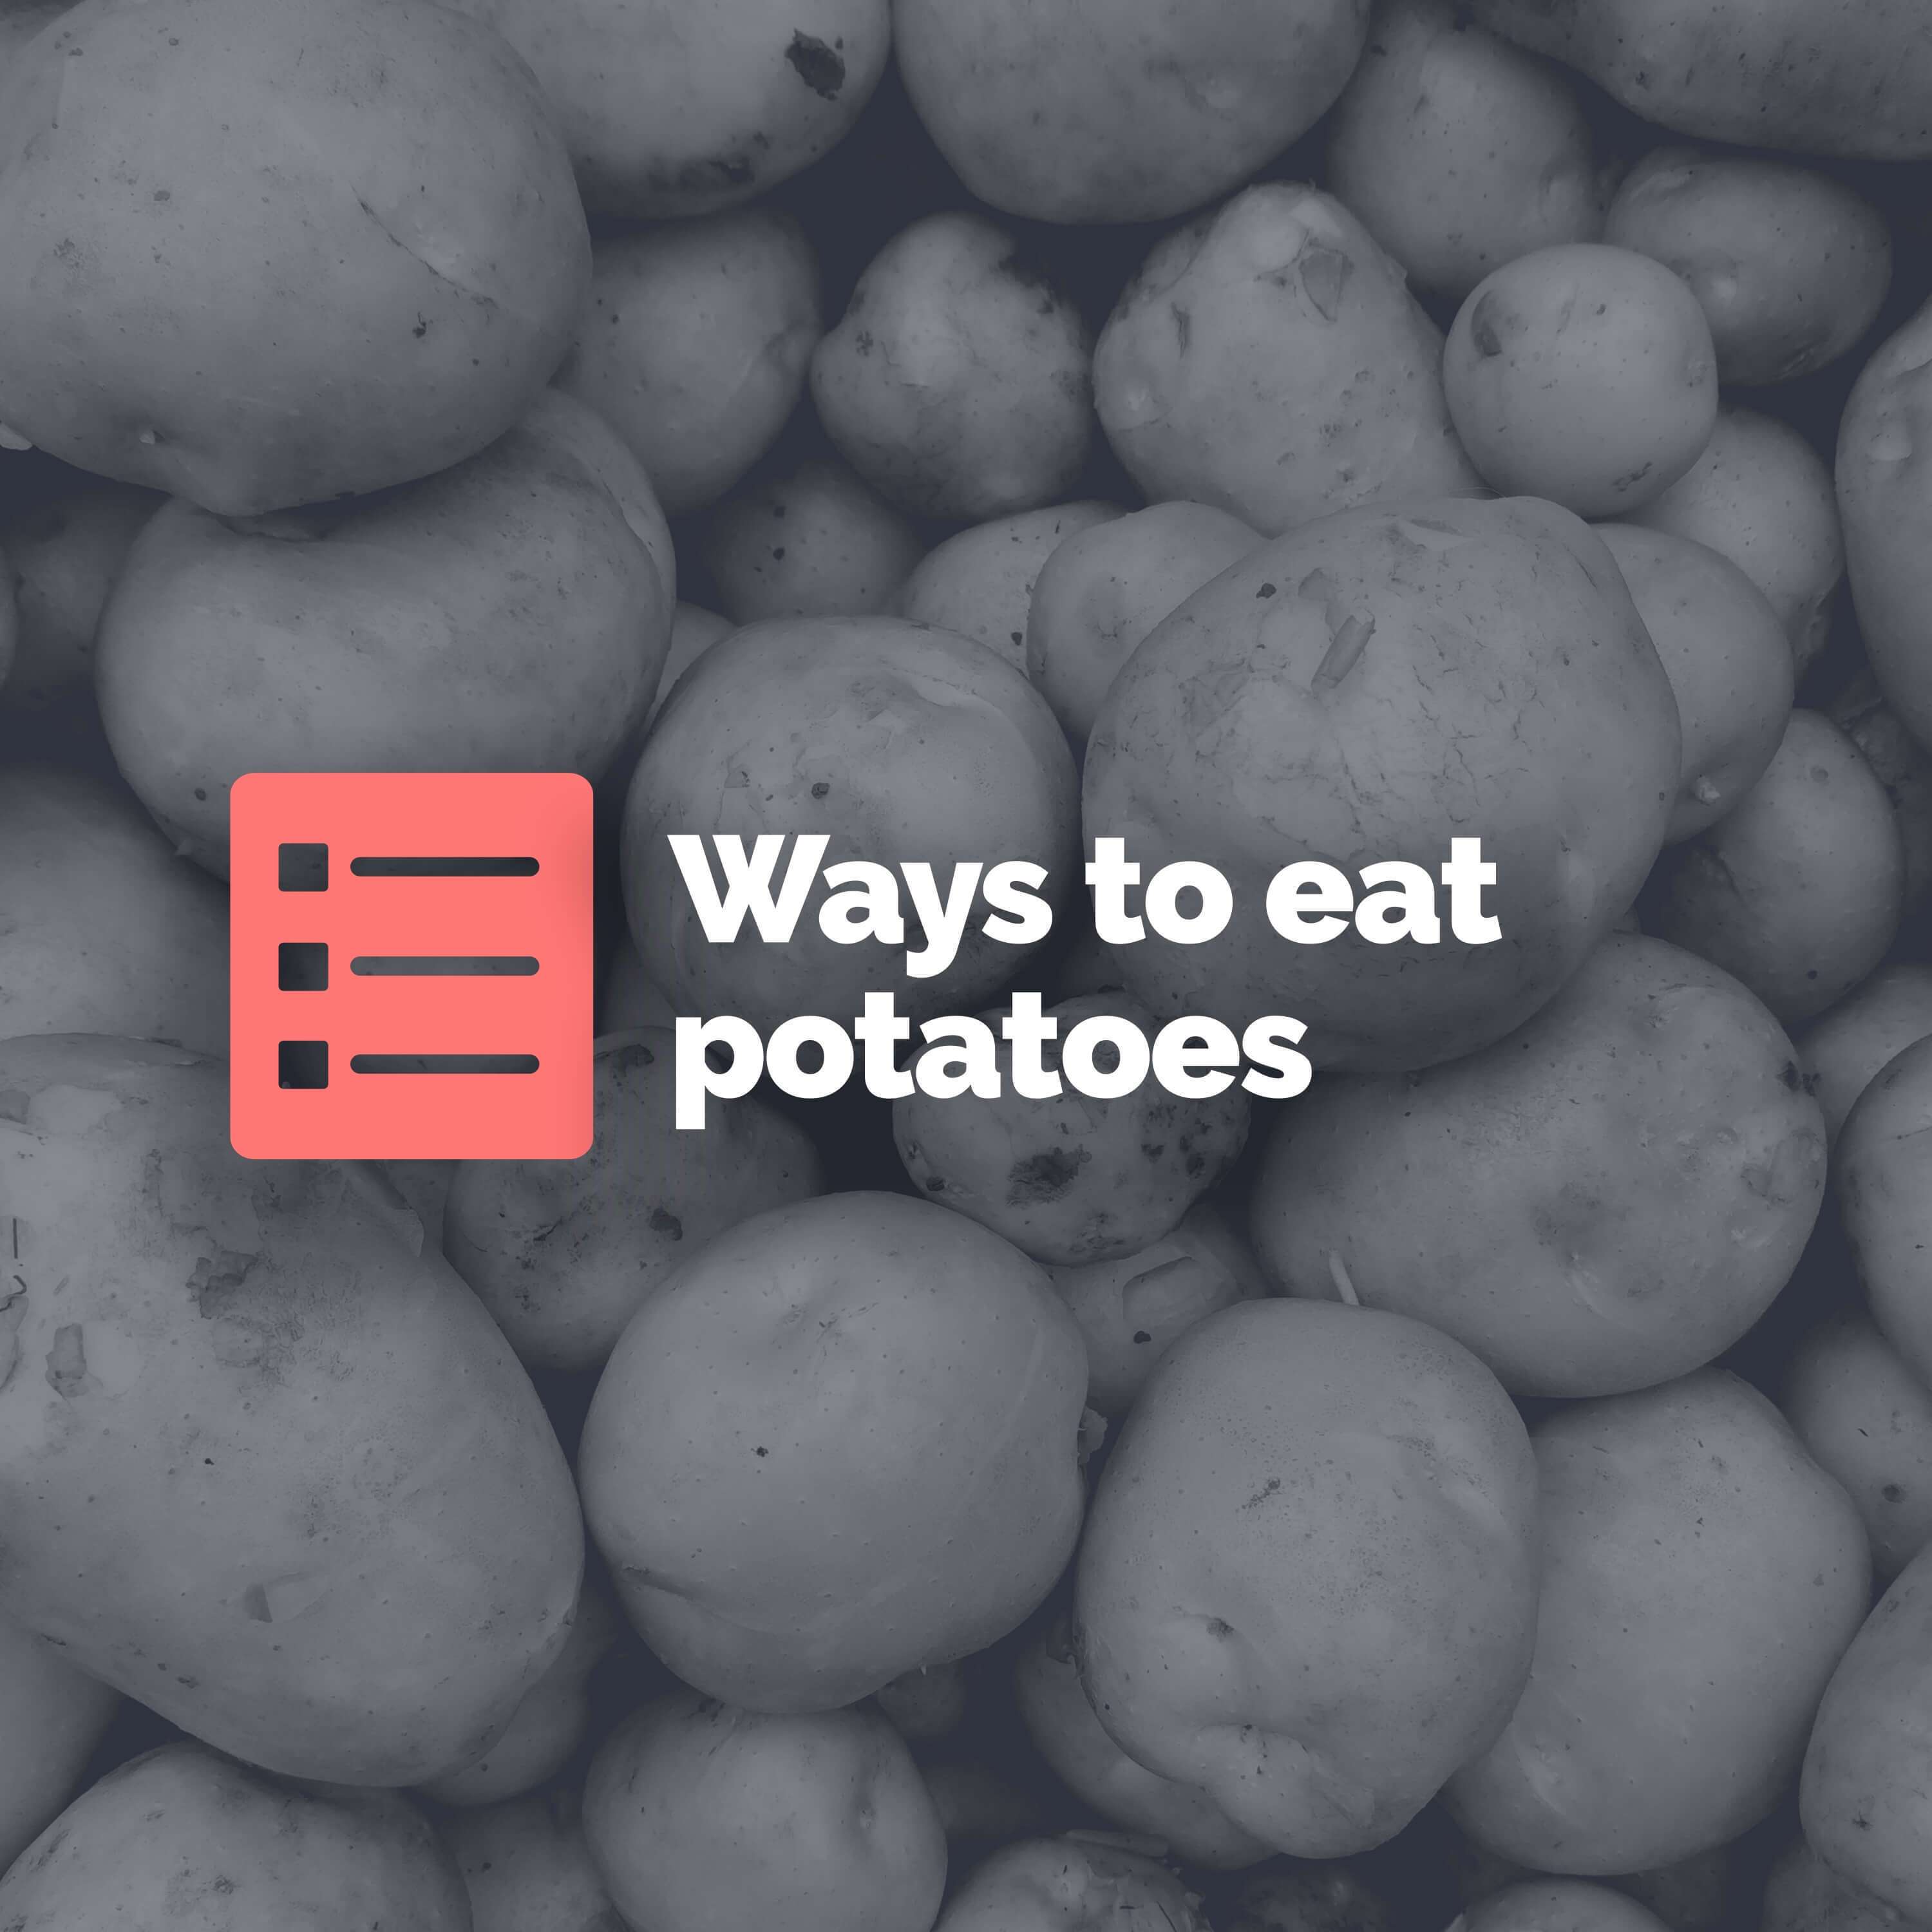 Top 5 ways to eat potatoes